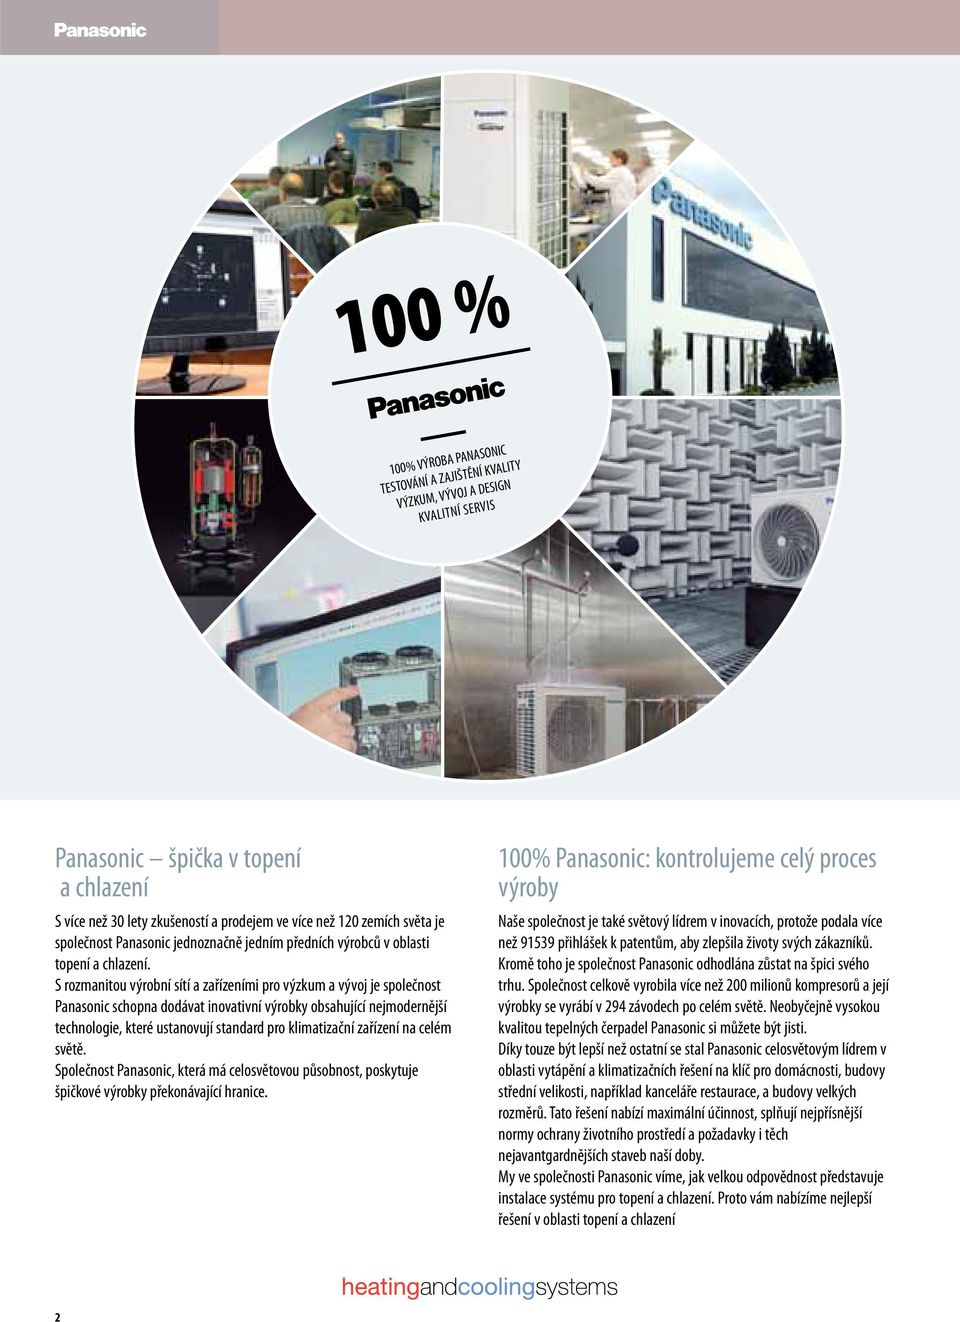 S rozmanitou výrobní sítí a zařízeními pro výzkum a vývoj je společnost Panasonic schopna dodávat inovativní výrobky obsahující nejmodernější technologie, které ustanovují standard pro klimatizační